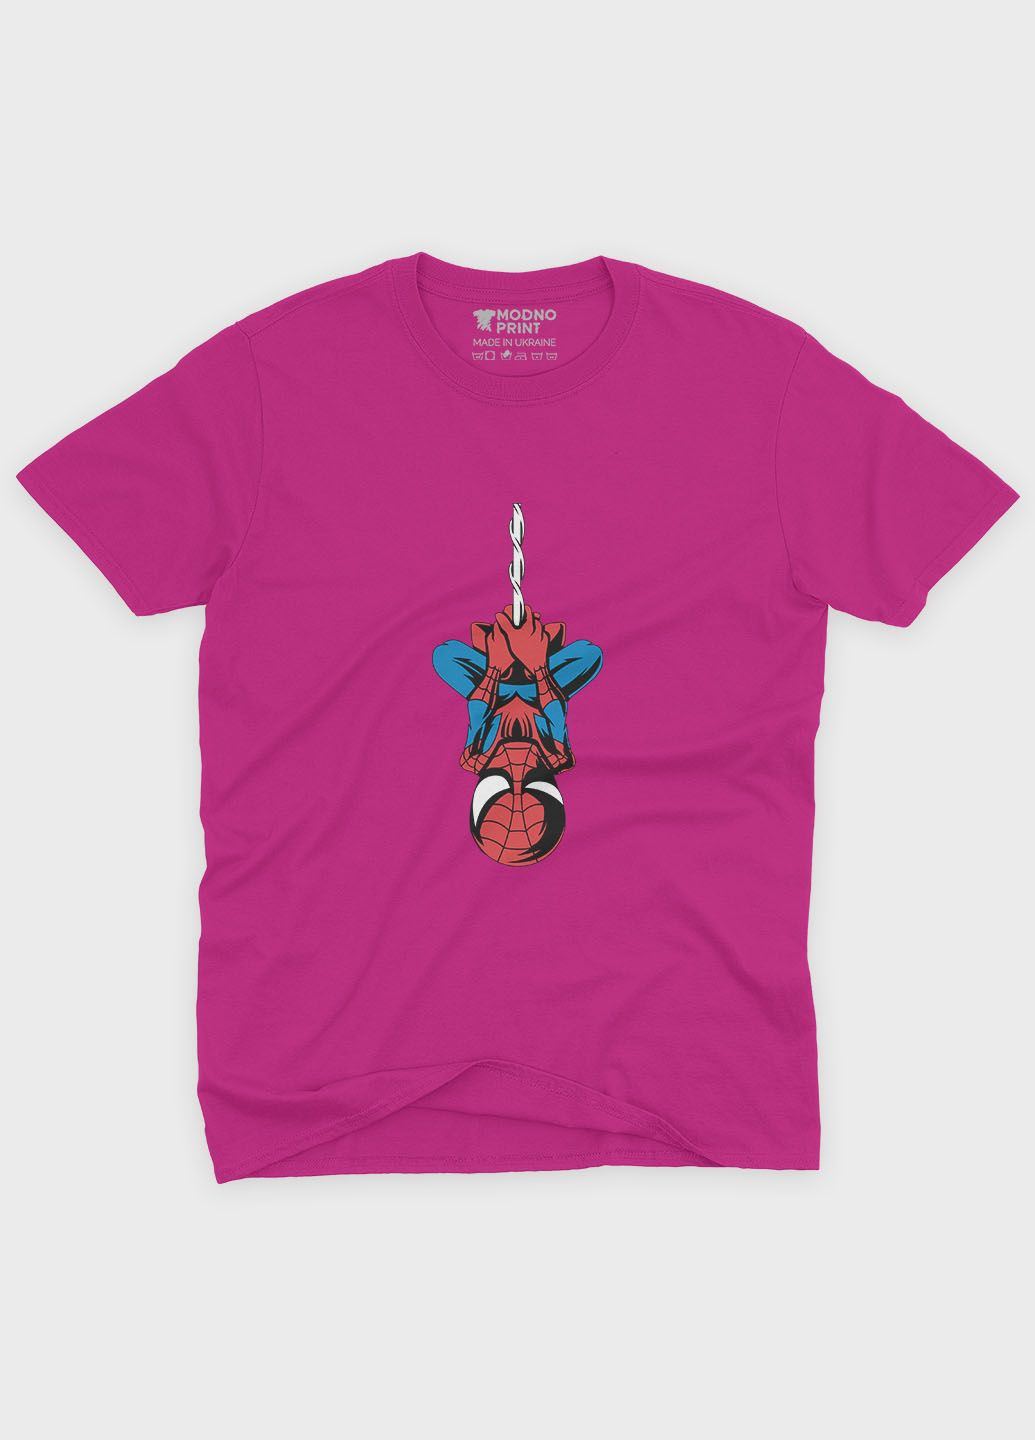 Розовая демисезонная футболка для девочки с принтом супергероя - человек-паук (ts001-1-fuxj-006-014-085-g) Modno